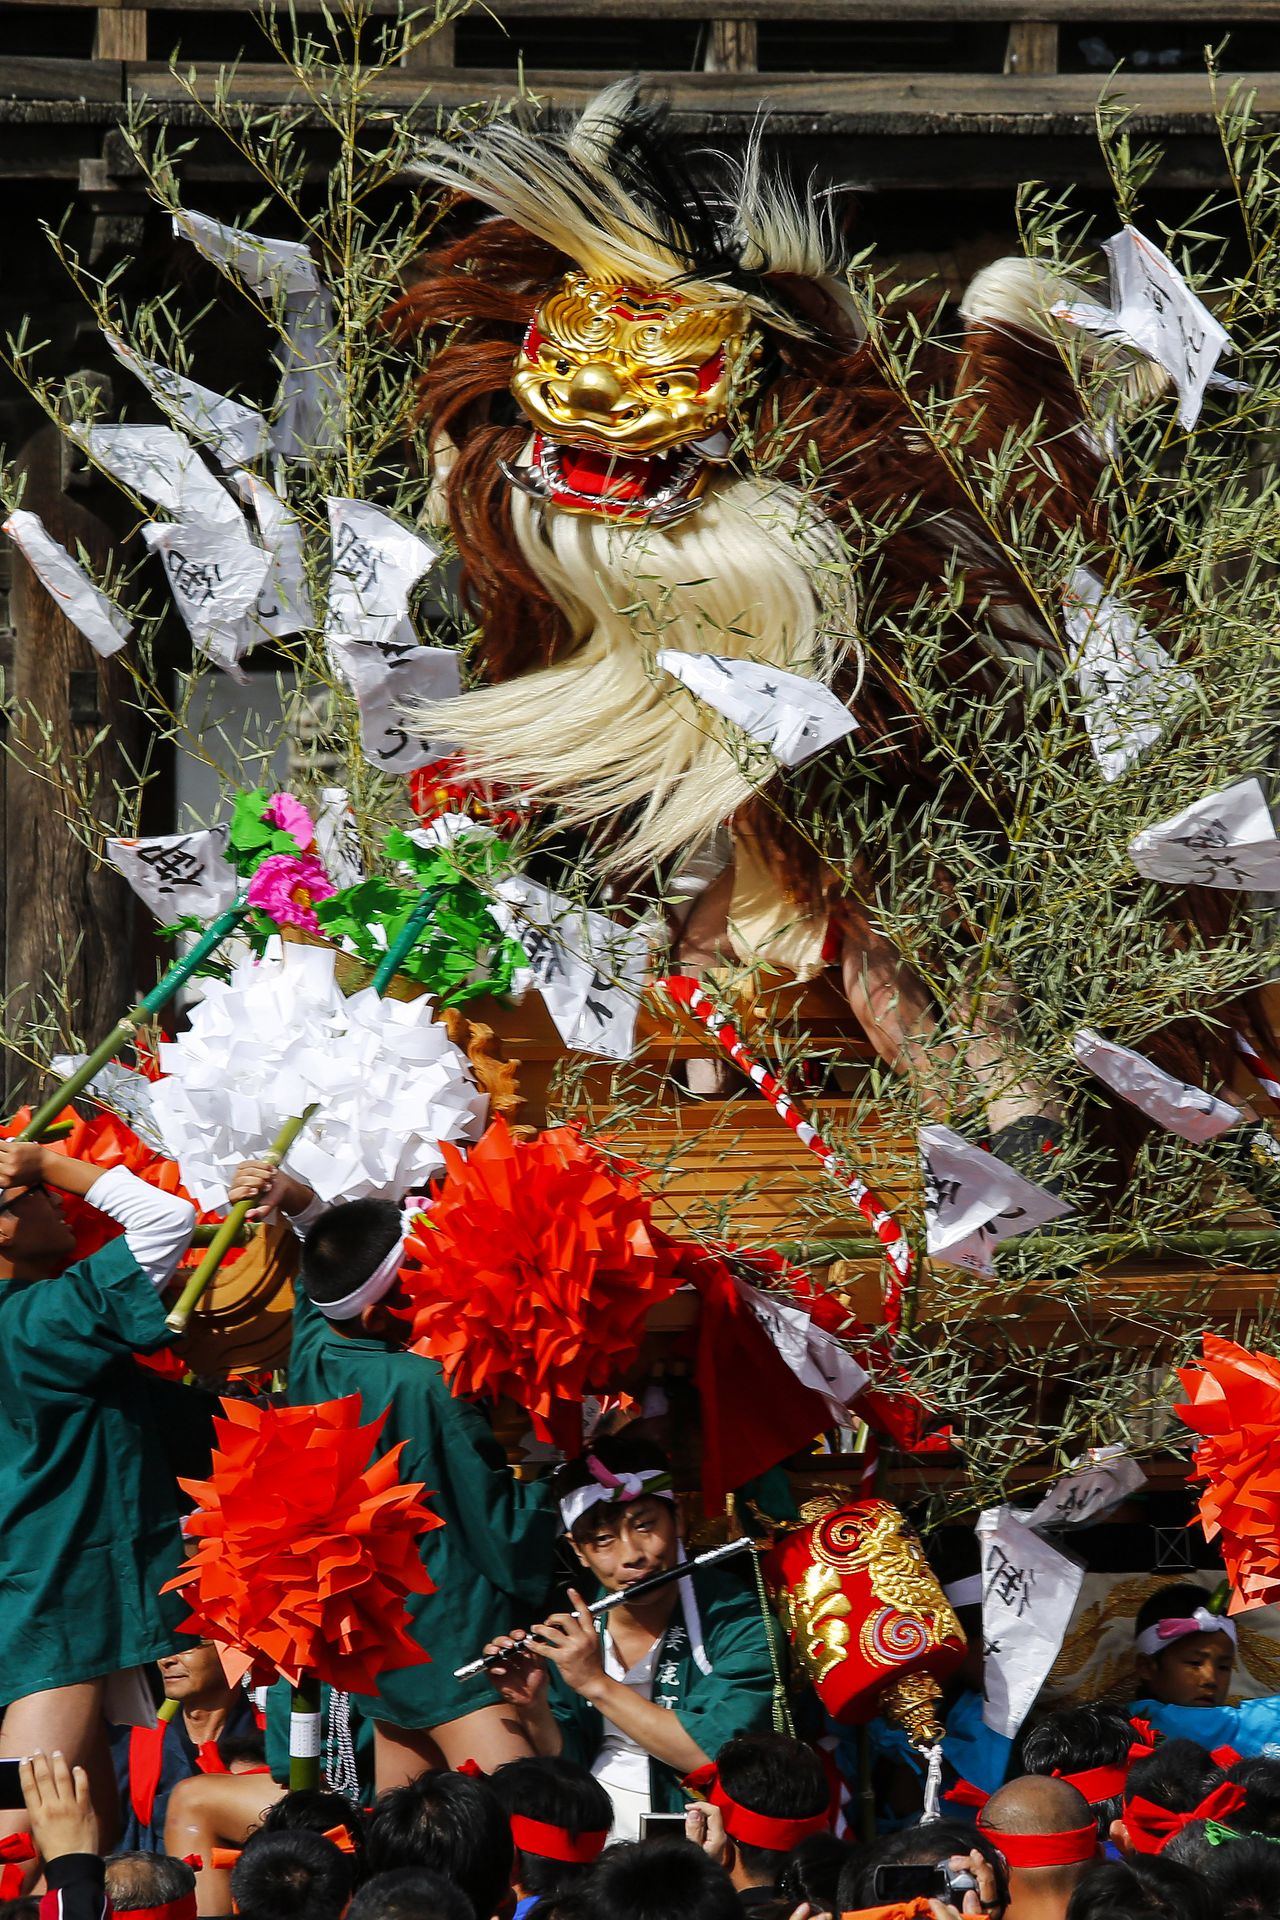 El desfile con el que las carrozas acceden al santuario está encabezado por una gran banderola seguida de un shishimai (danza de los leones) y un shishi-danjiri (carroza de leones).